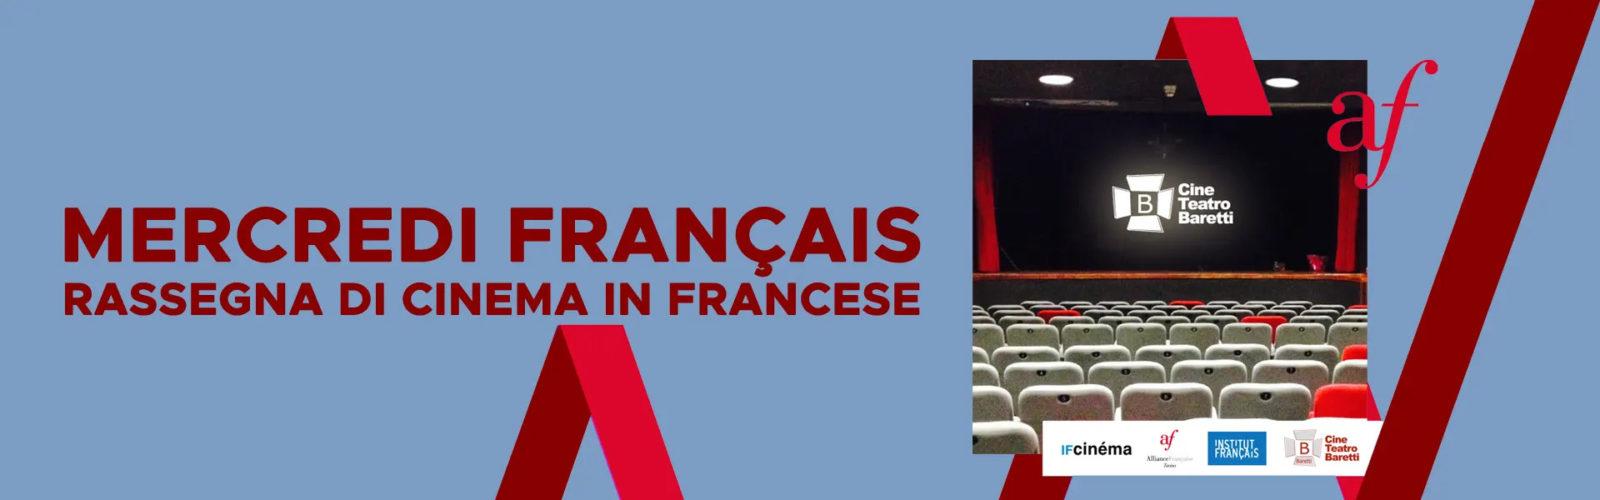 Mercredi Française – Rassegna di cinema in francese al CineTeatro Baretti di Torino